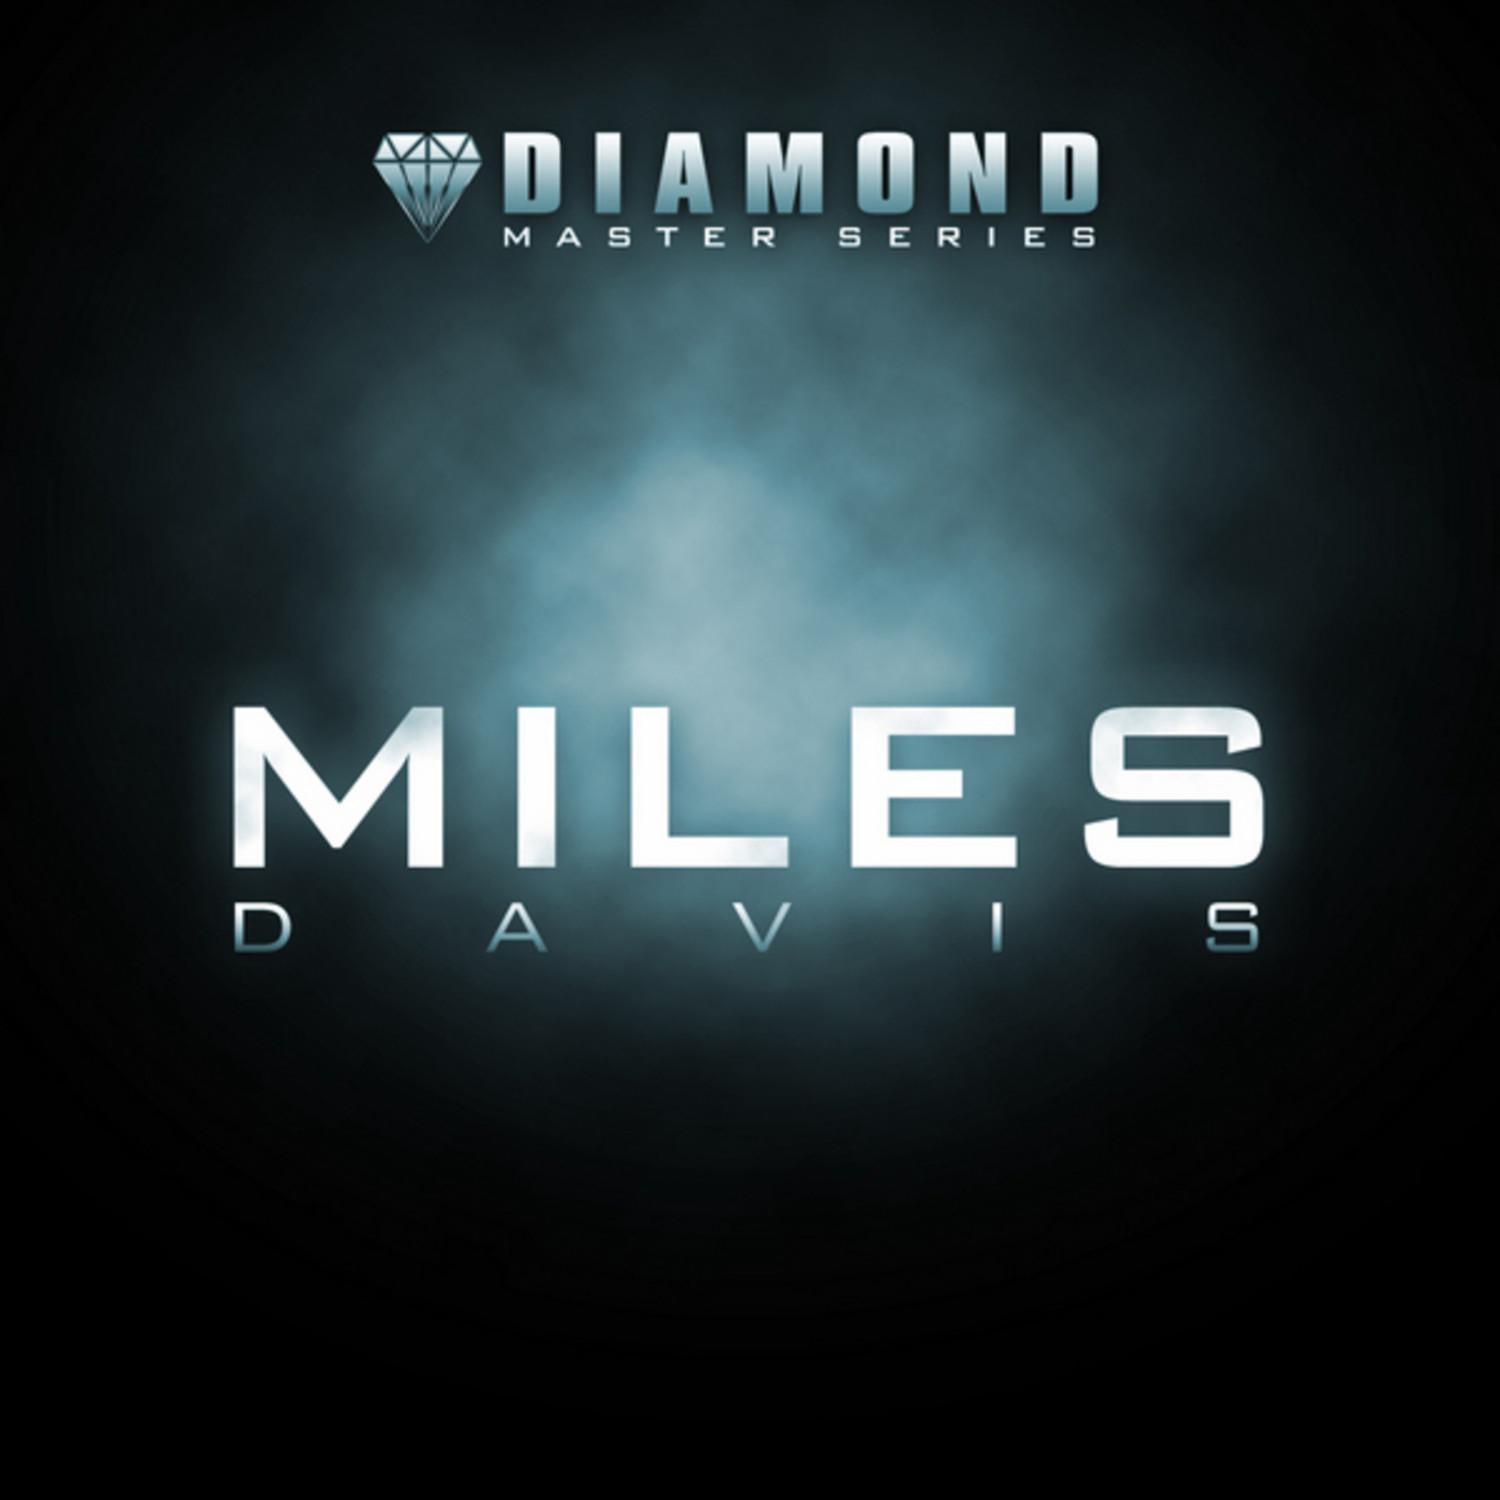 Diamond Master Series - Miles Davis